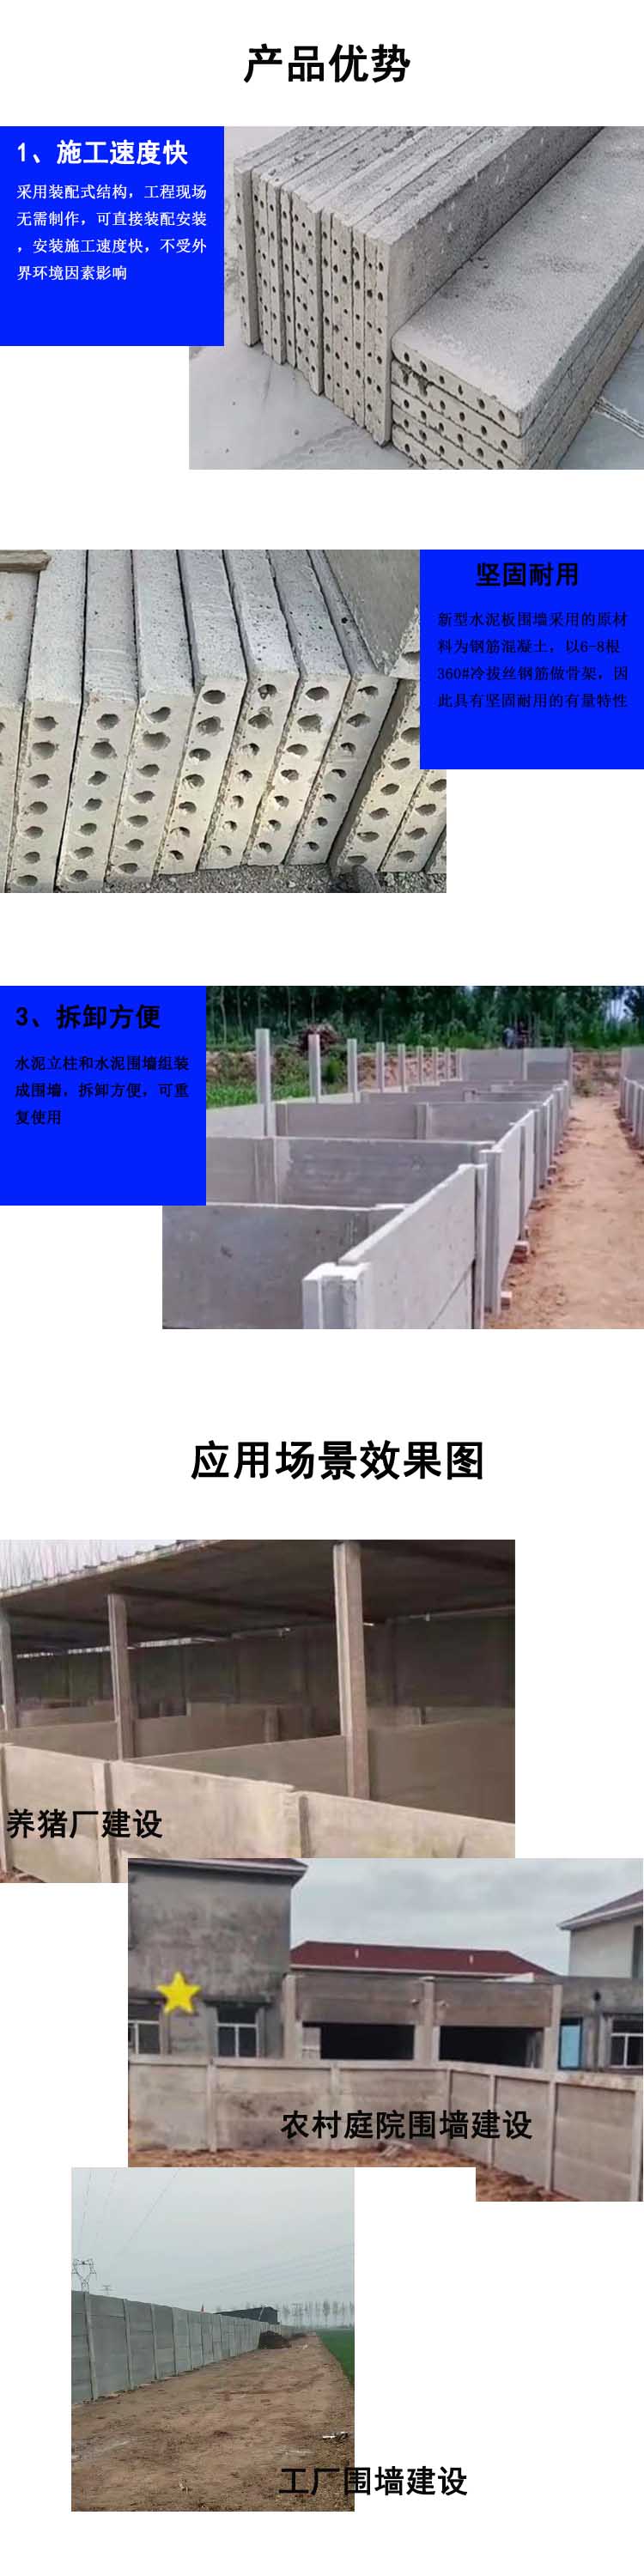 5公分厚新型水泥板围墙优势特点及应用场景